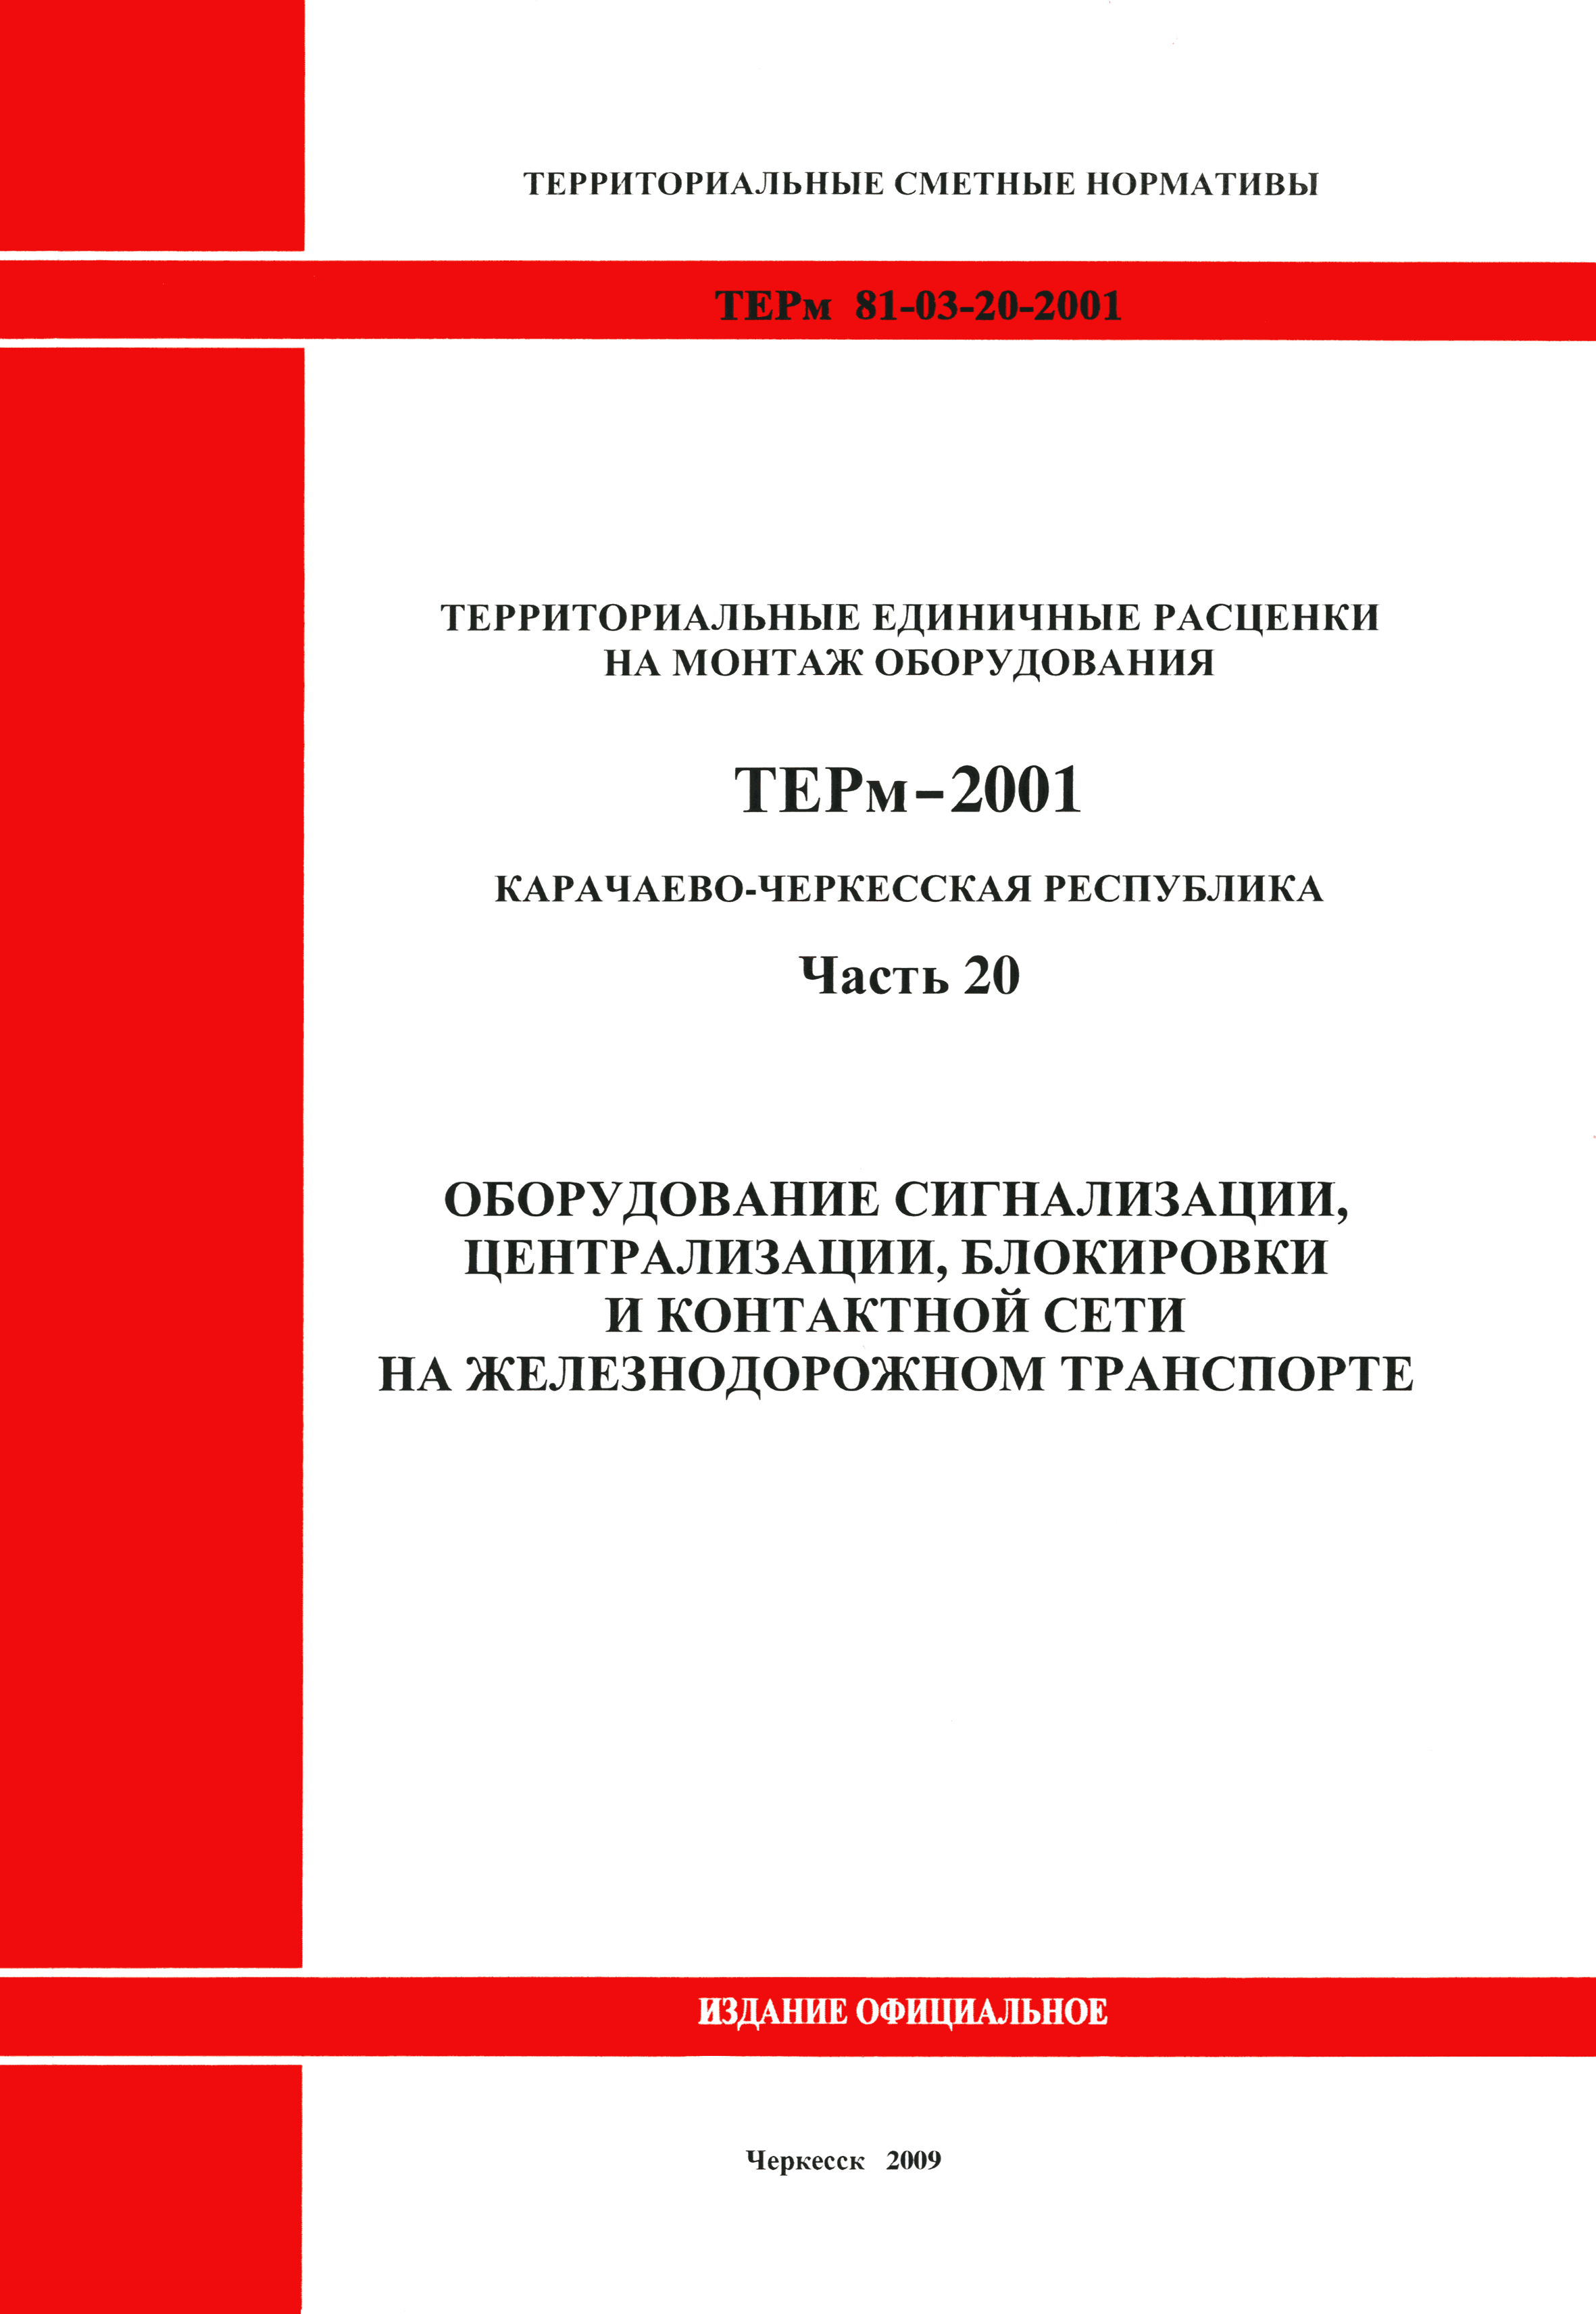 ТЕРм Карачаево-Черкесская Республика 20-2001